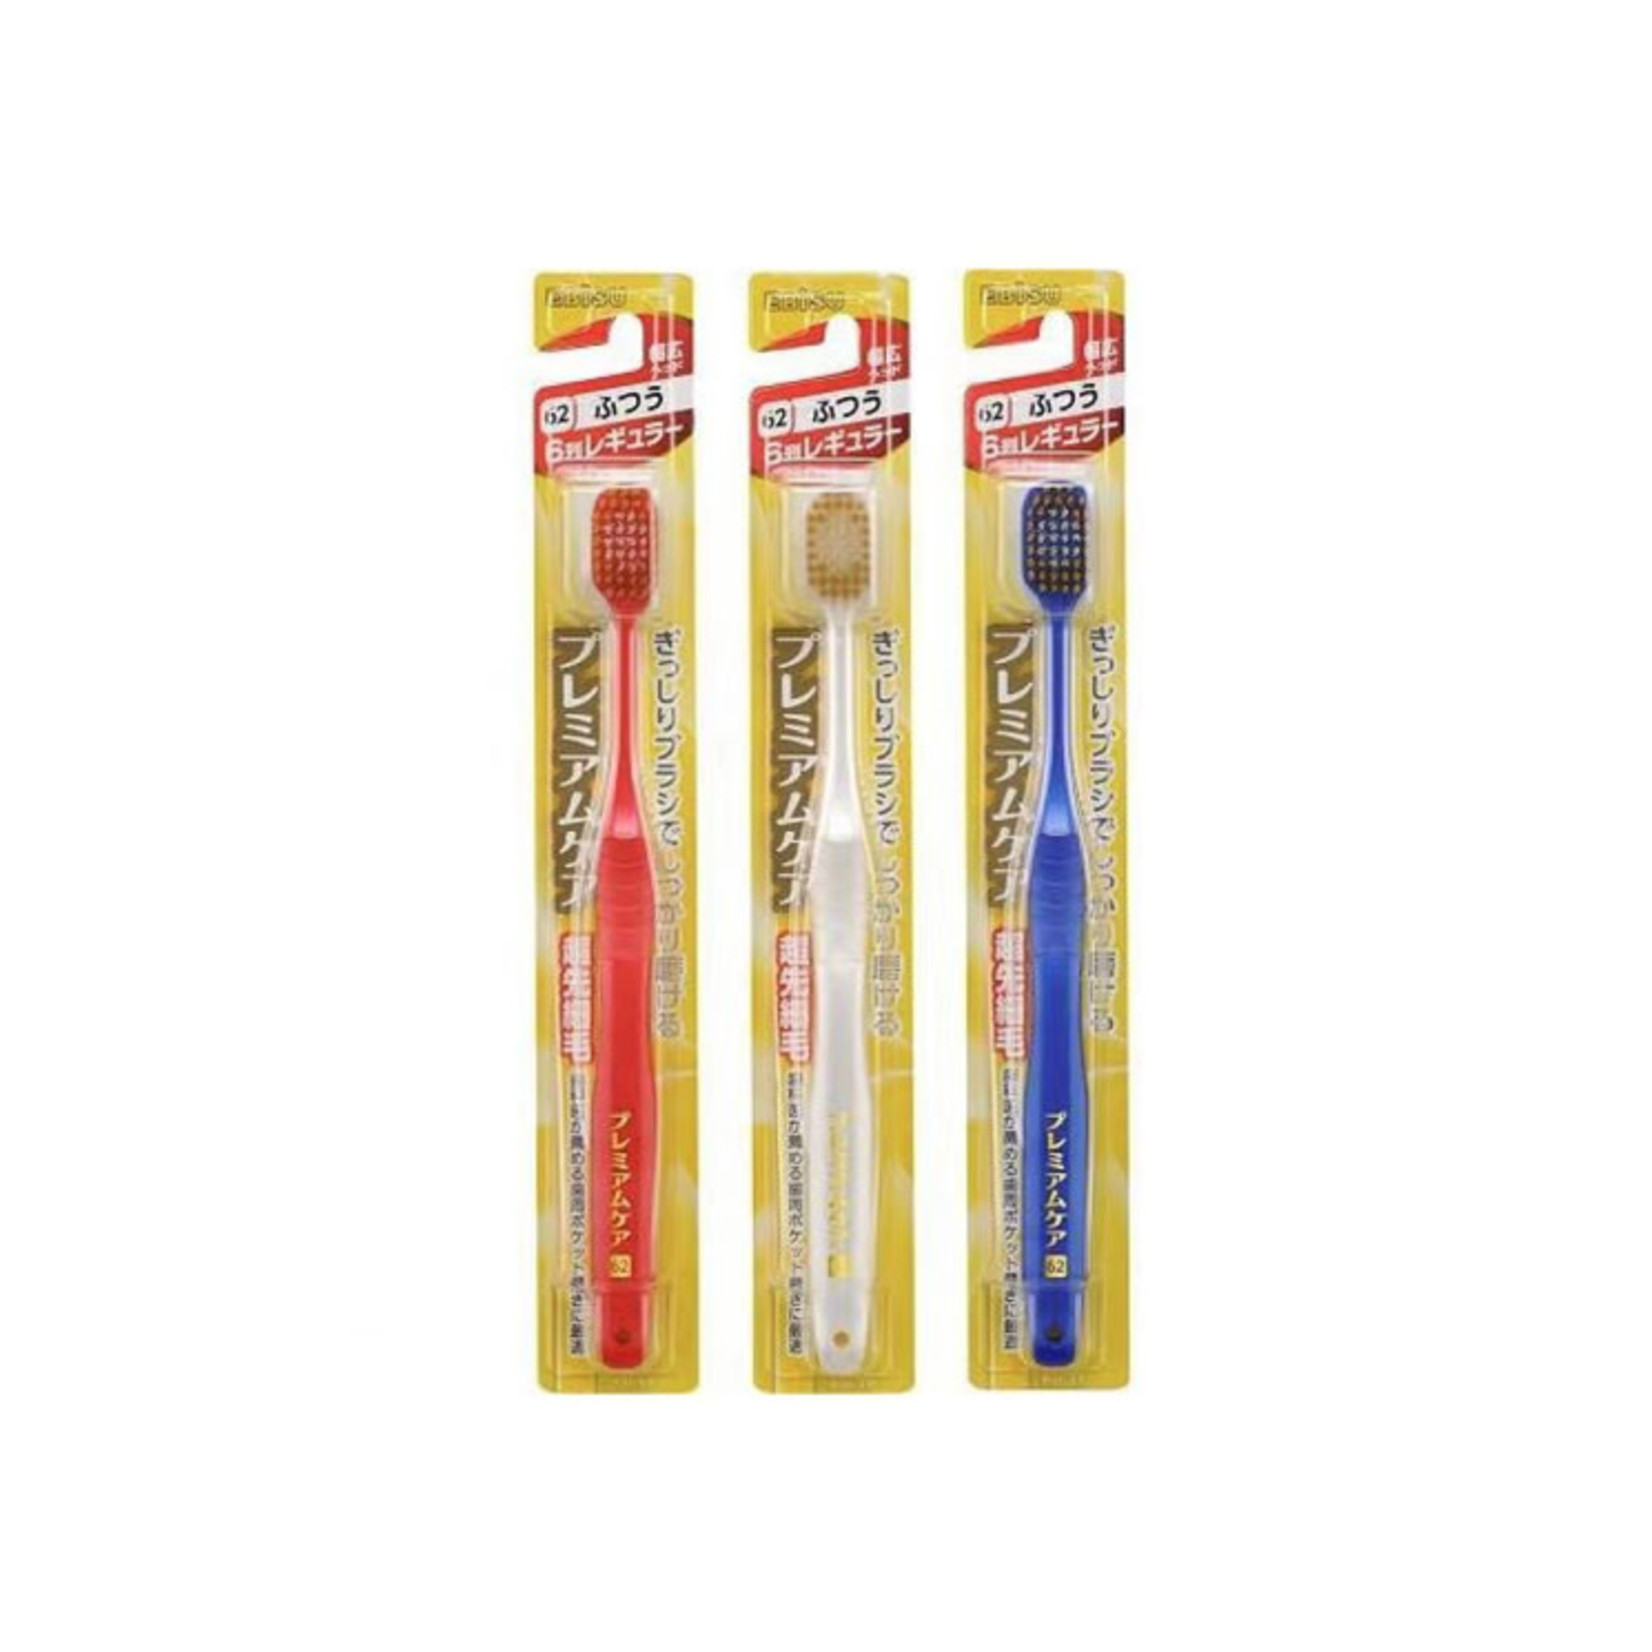 Ebisu Ebisu The Premium Care Toothbrush Series